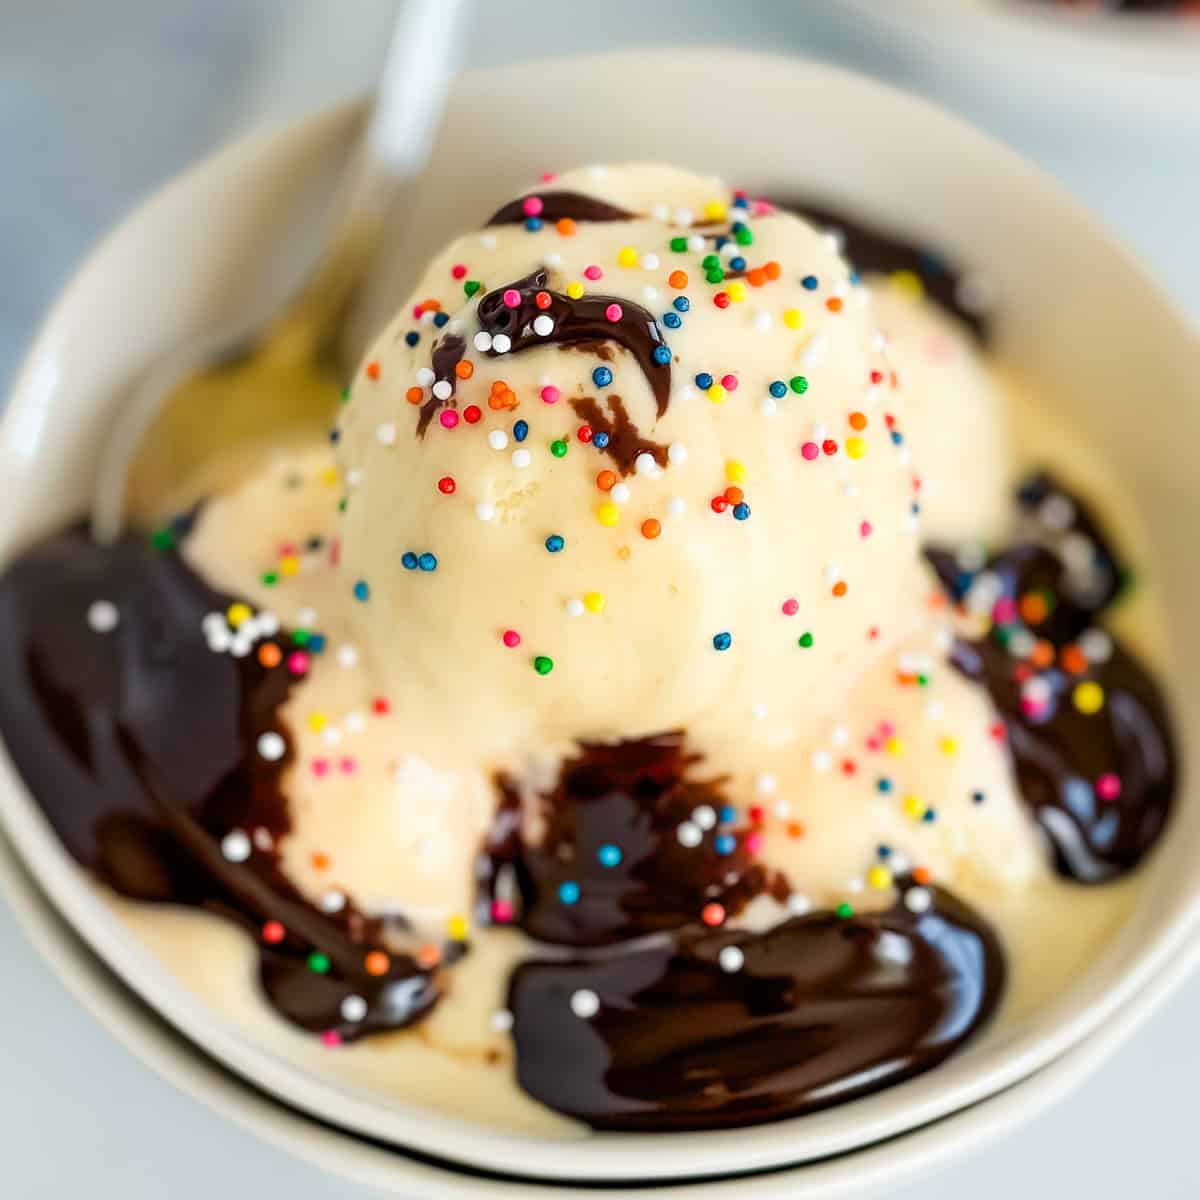 Homemade vanilla ice cream